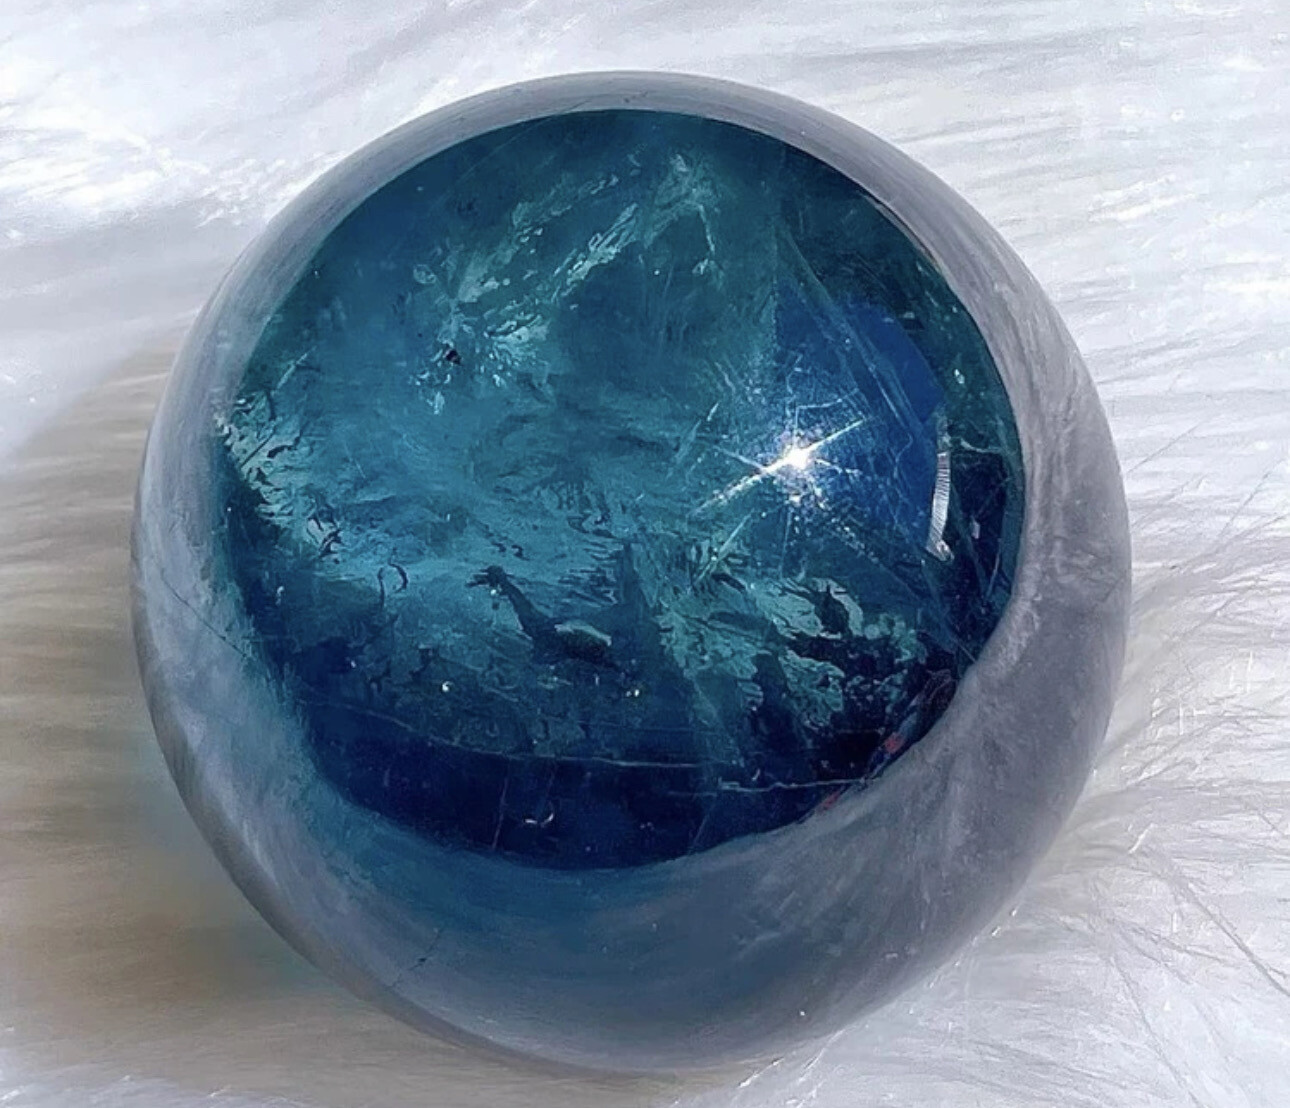 Sphère fluorite